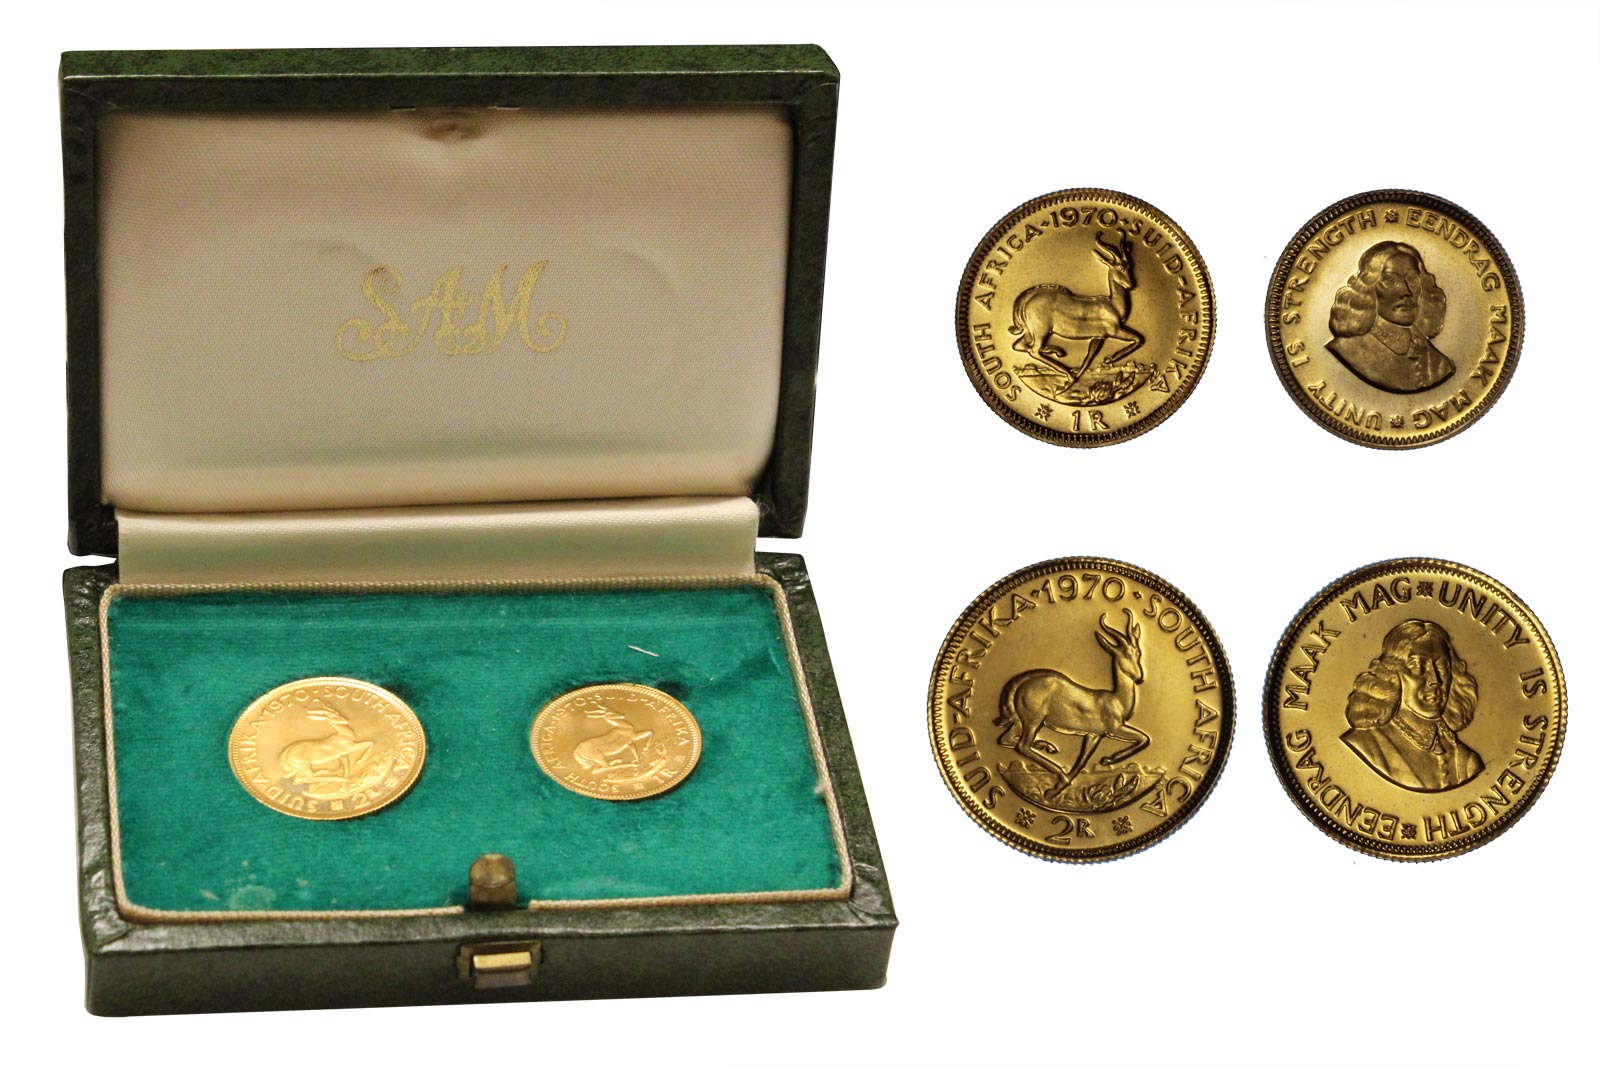 Serie da 2 Rand e Rand gr. 11,97 in oro 917/000 - conf. originale